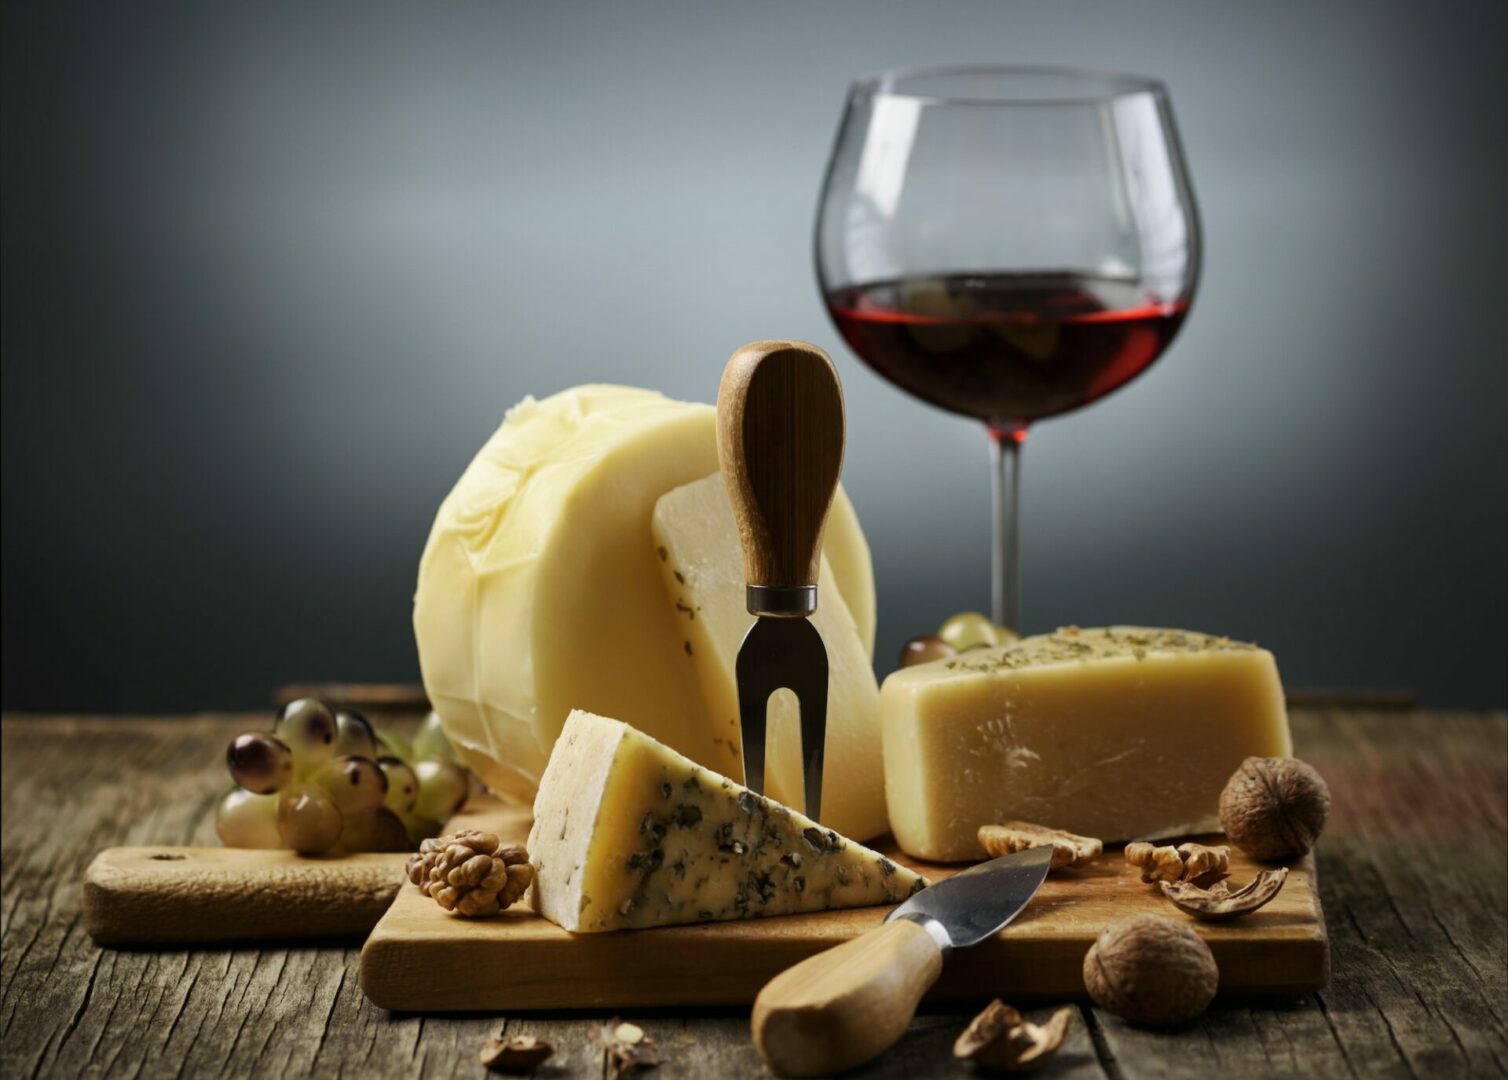 Les fromages pour des soirées vins et fromages réussies